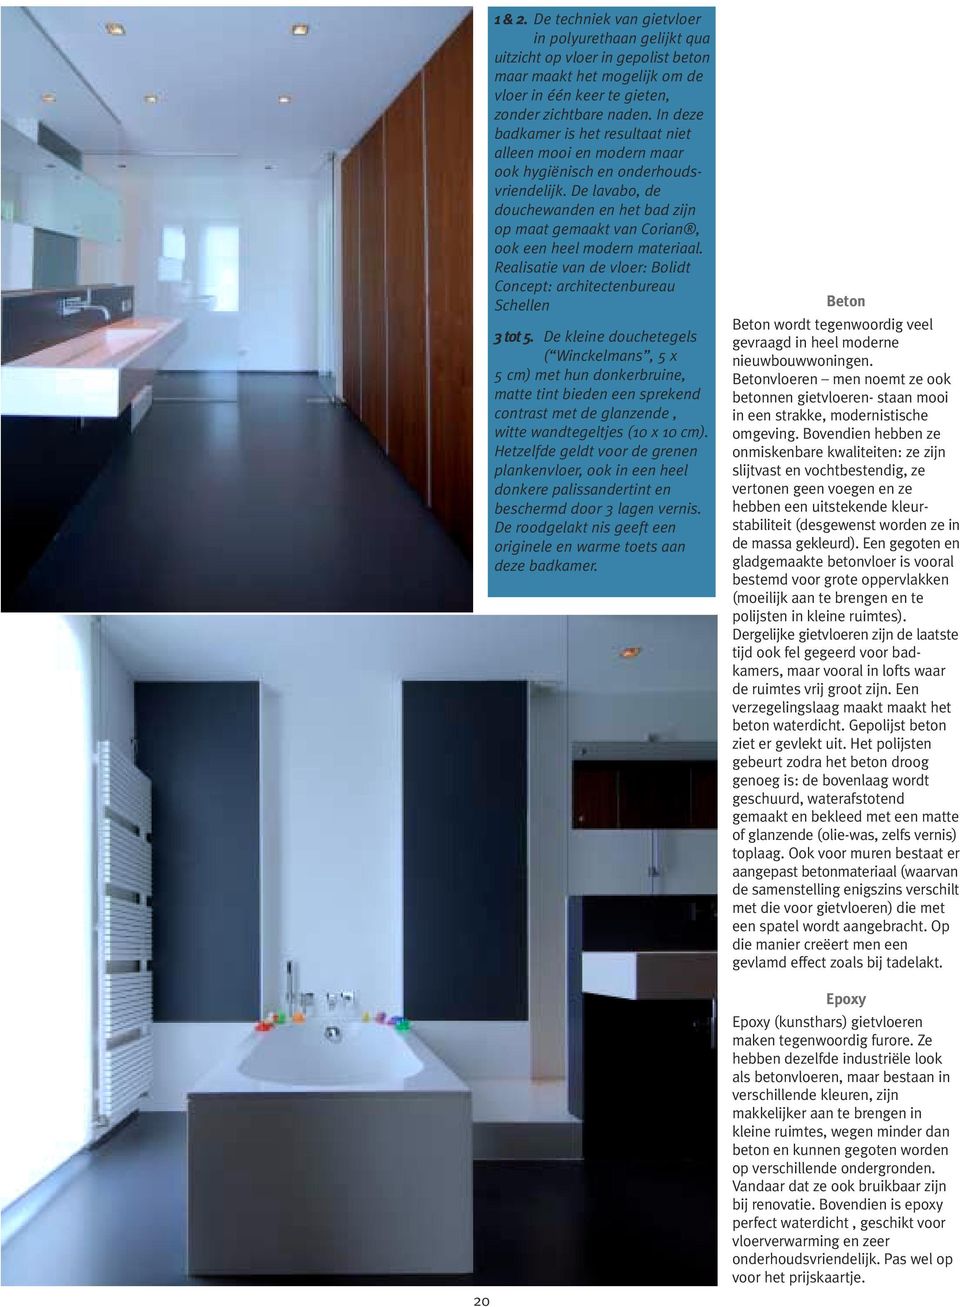 De lavabo, de douchewanden en het bad zijn op maat gemaakt van Corian, ook een heel modern materiaal. Realisatie van de vloer: Bolidt Concept: architectenbureau Schellen 3 tot 5.